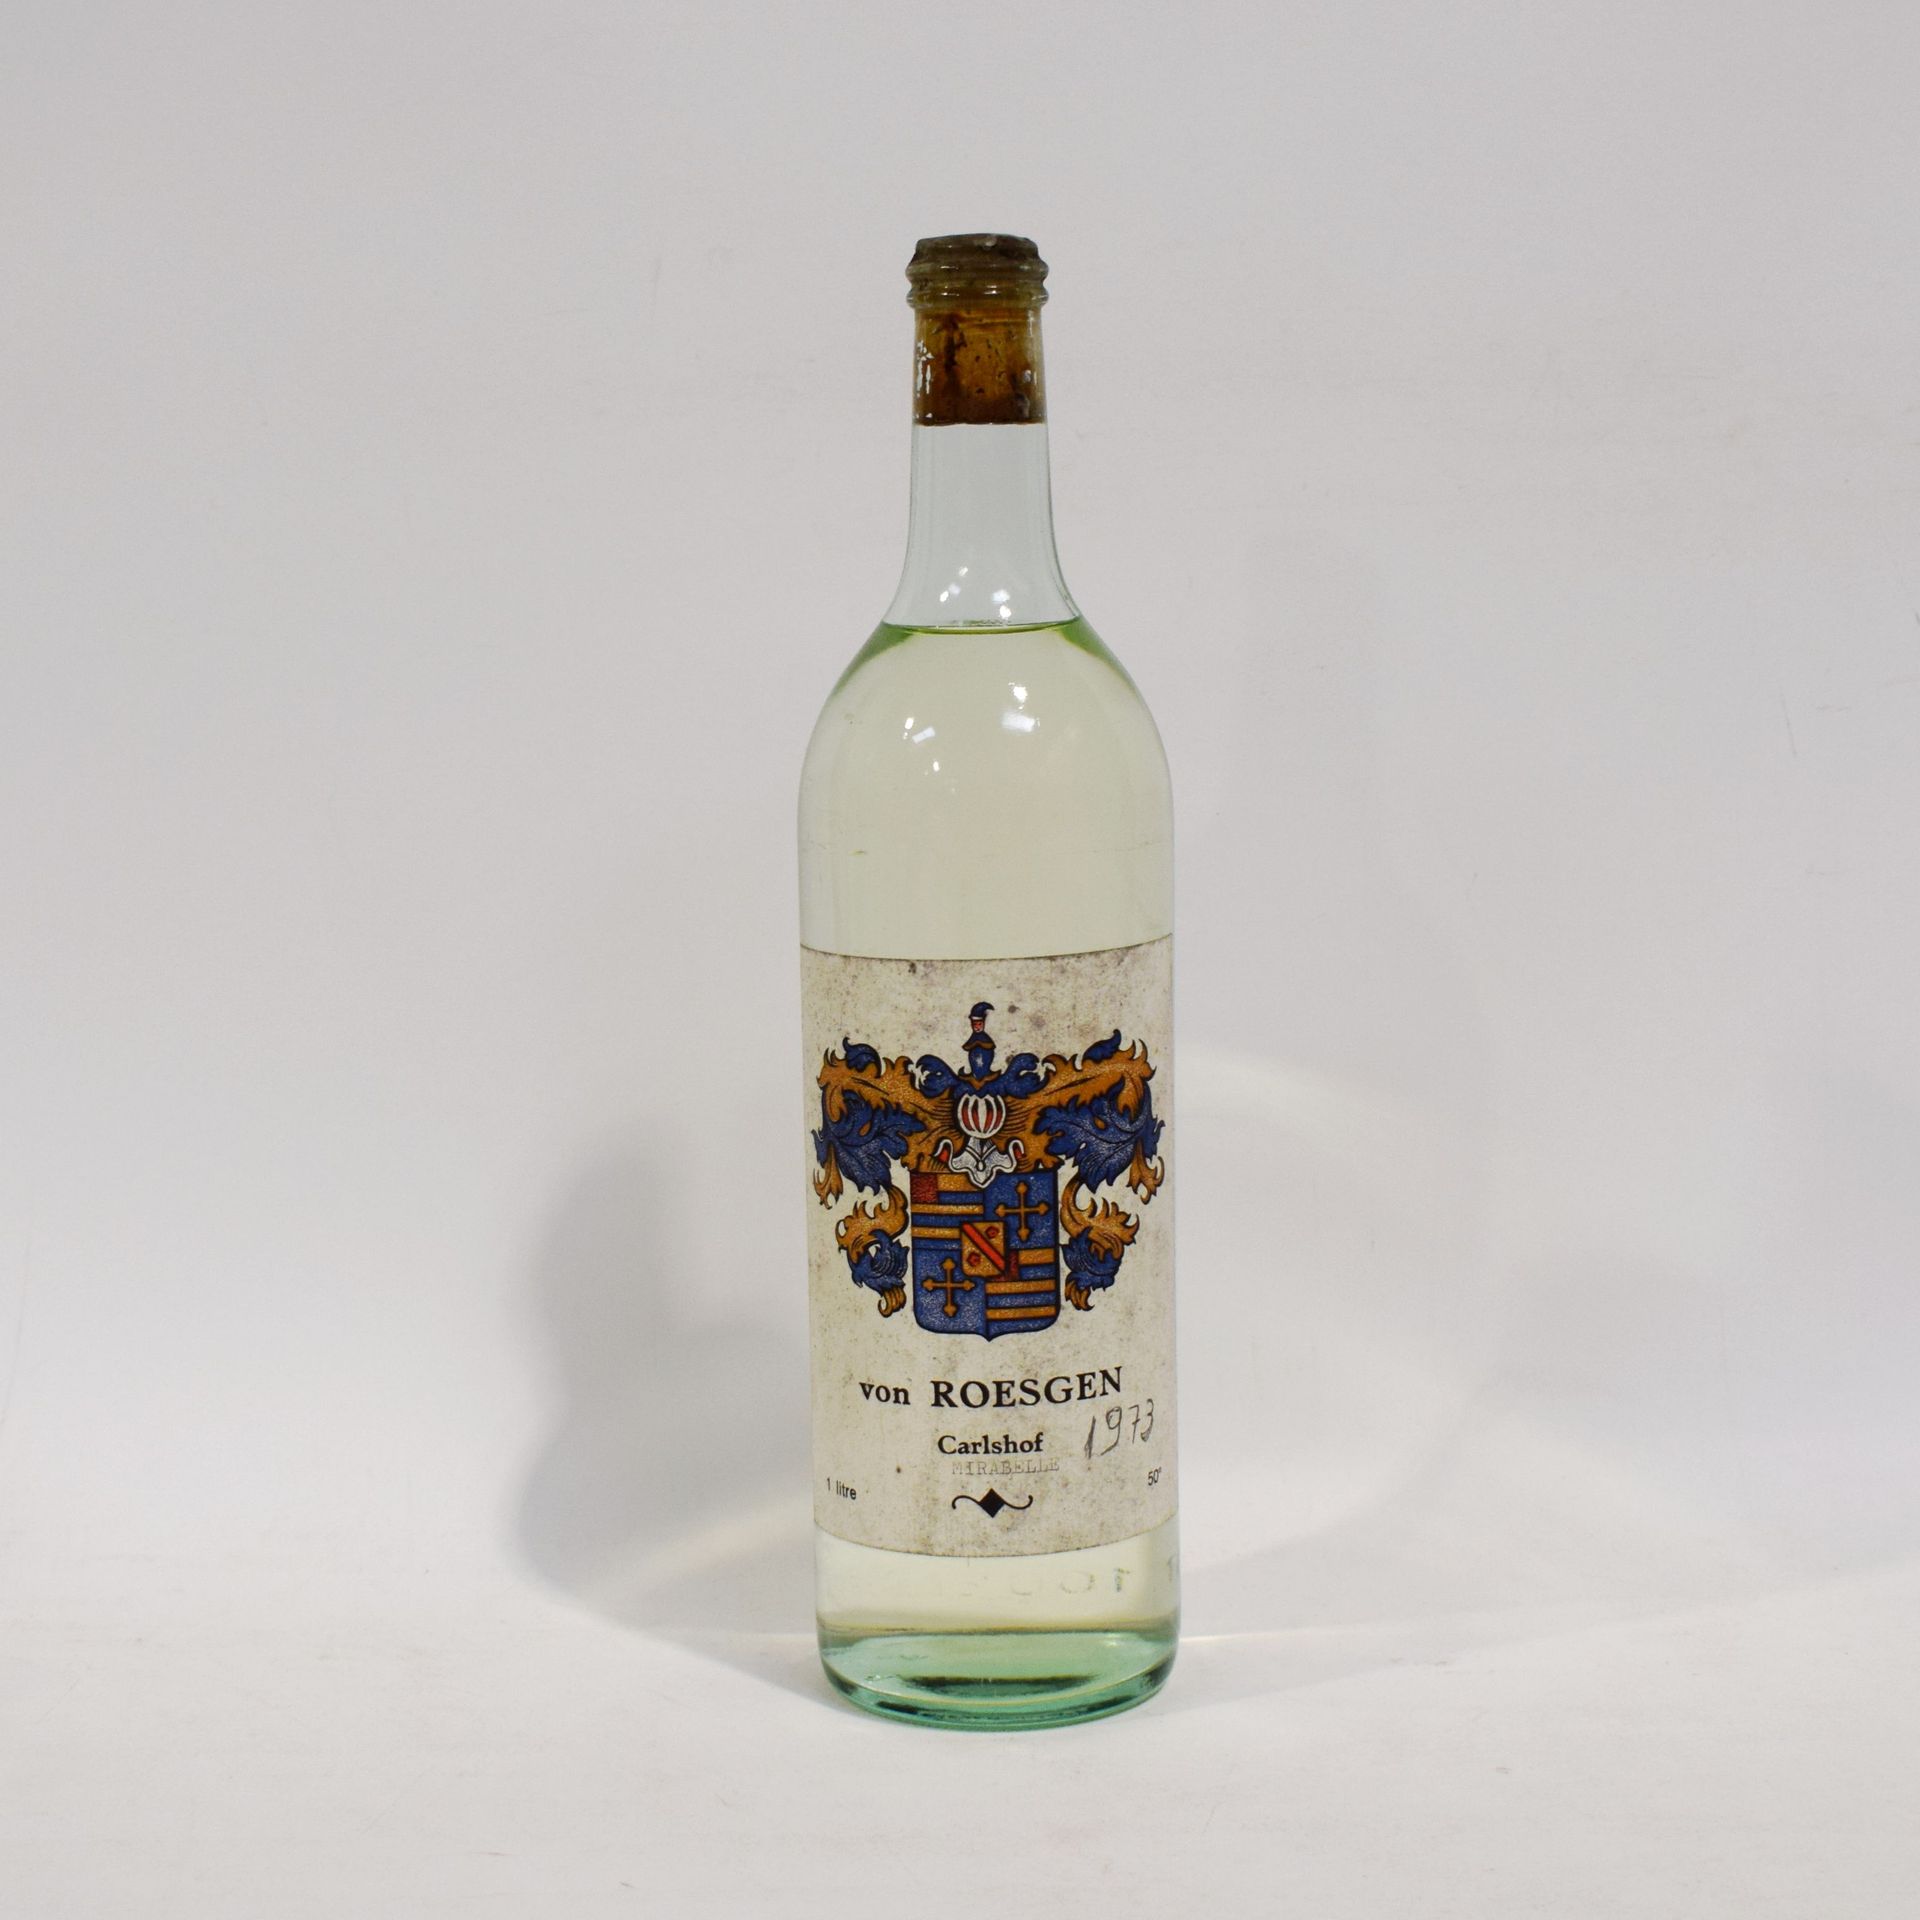 Null (EAU-DE-VIE)一瓶Mirabelle李子白兰地，冯-罗伊斯根-卡尔斯霍夫，瓶上提到1973年，100cl，50%。